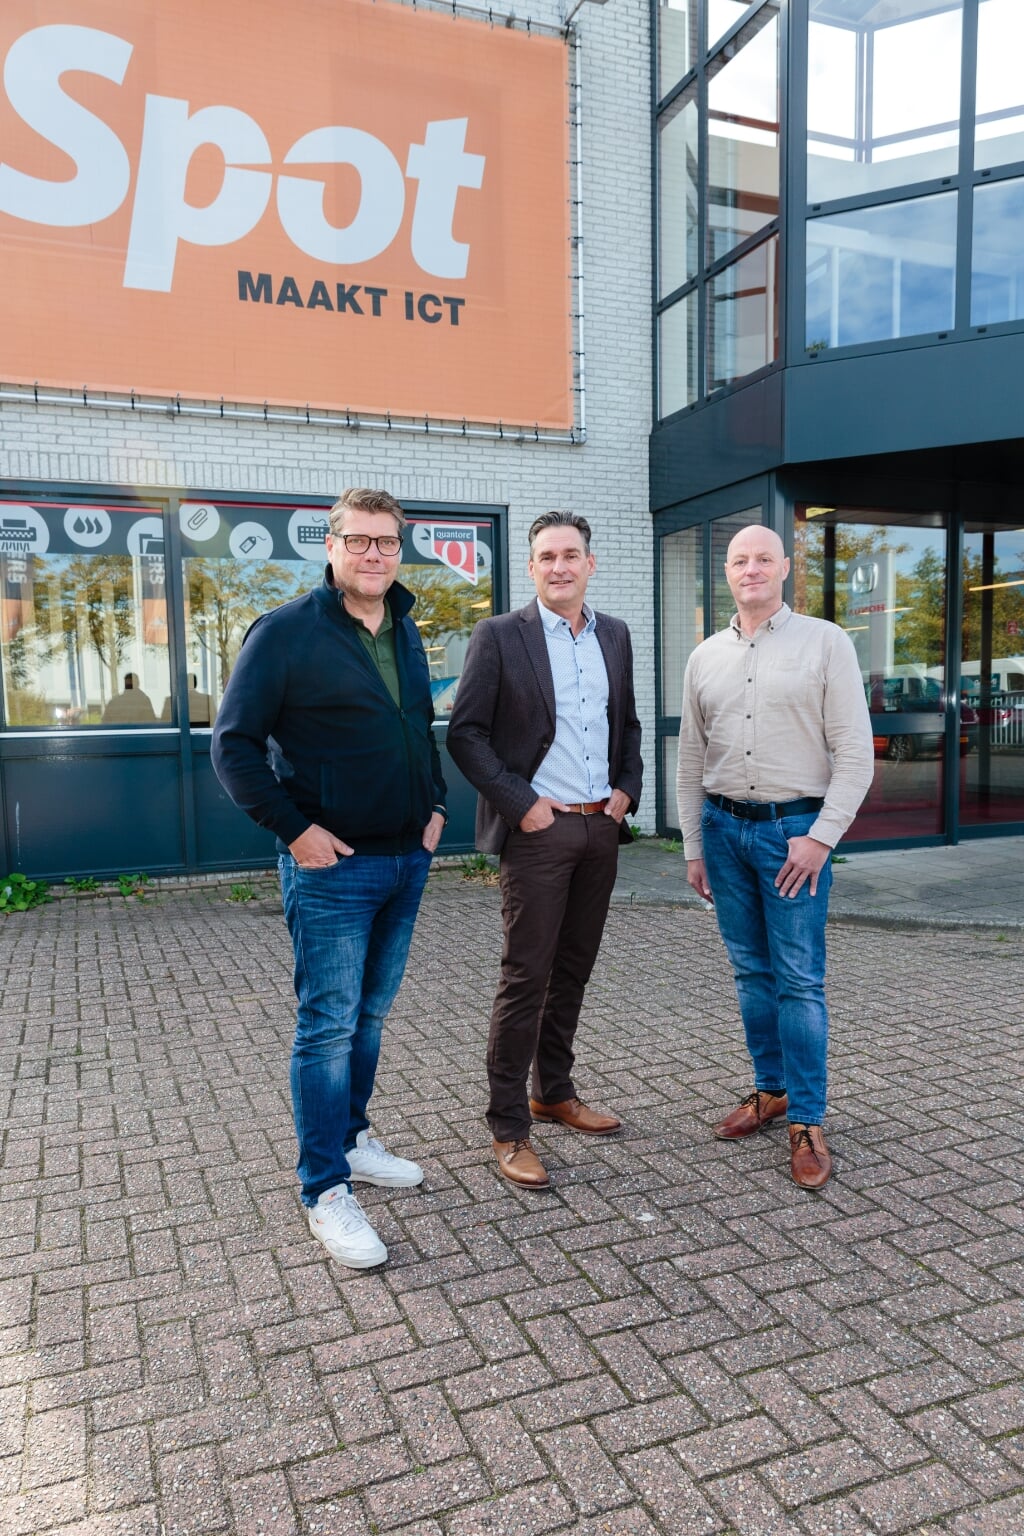 Marco Rietdijk, Algemeen directeur, geflankeerd door Gerard Smith, Business manager en Ben Günther, Operations manager